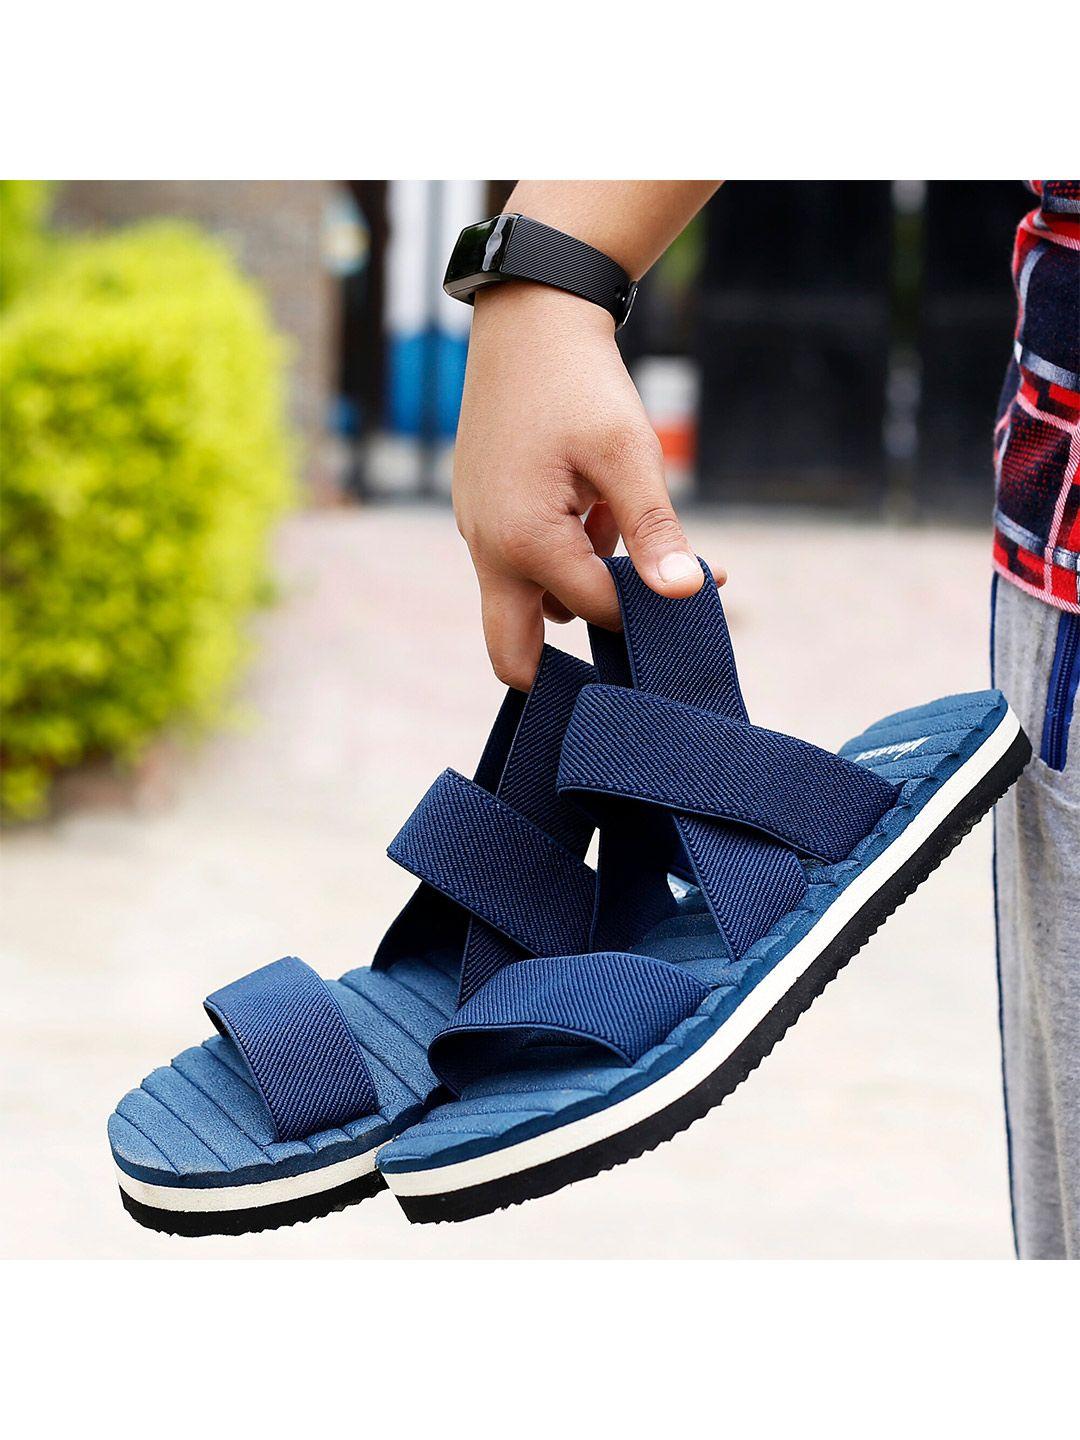 kraasa men navy blue comfort sandals